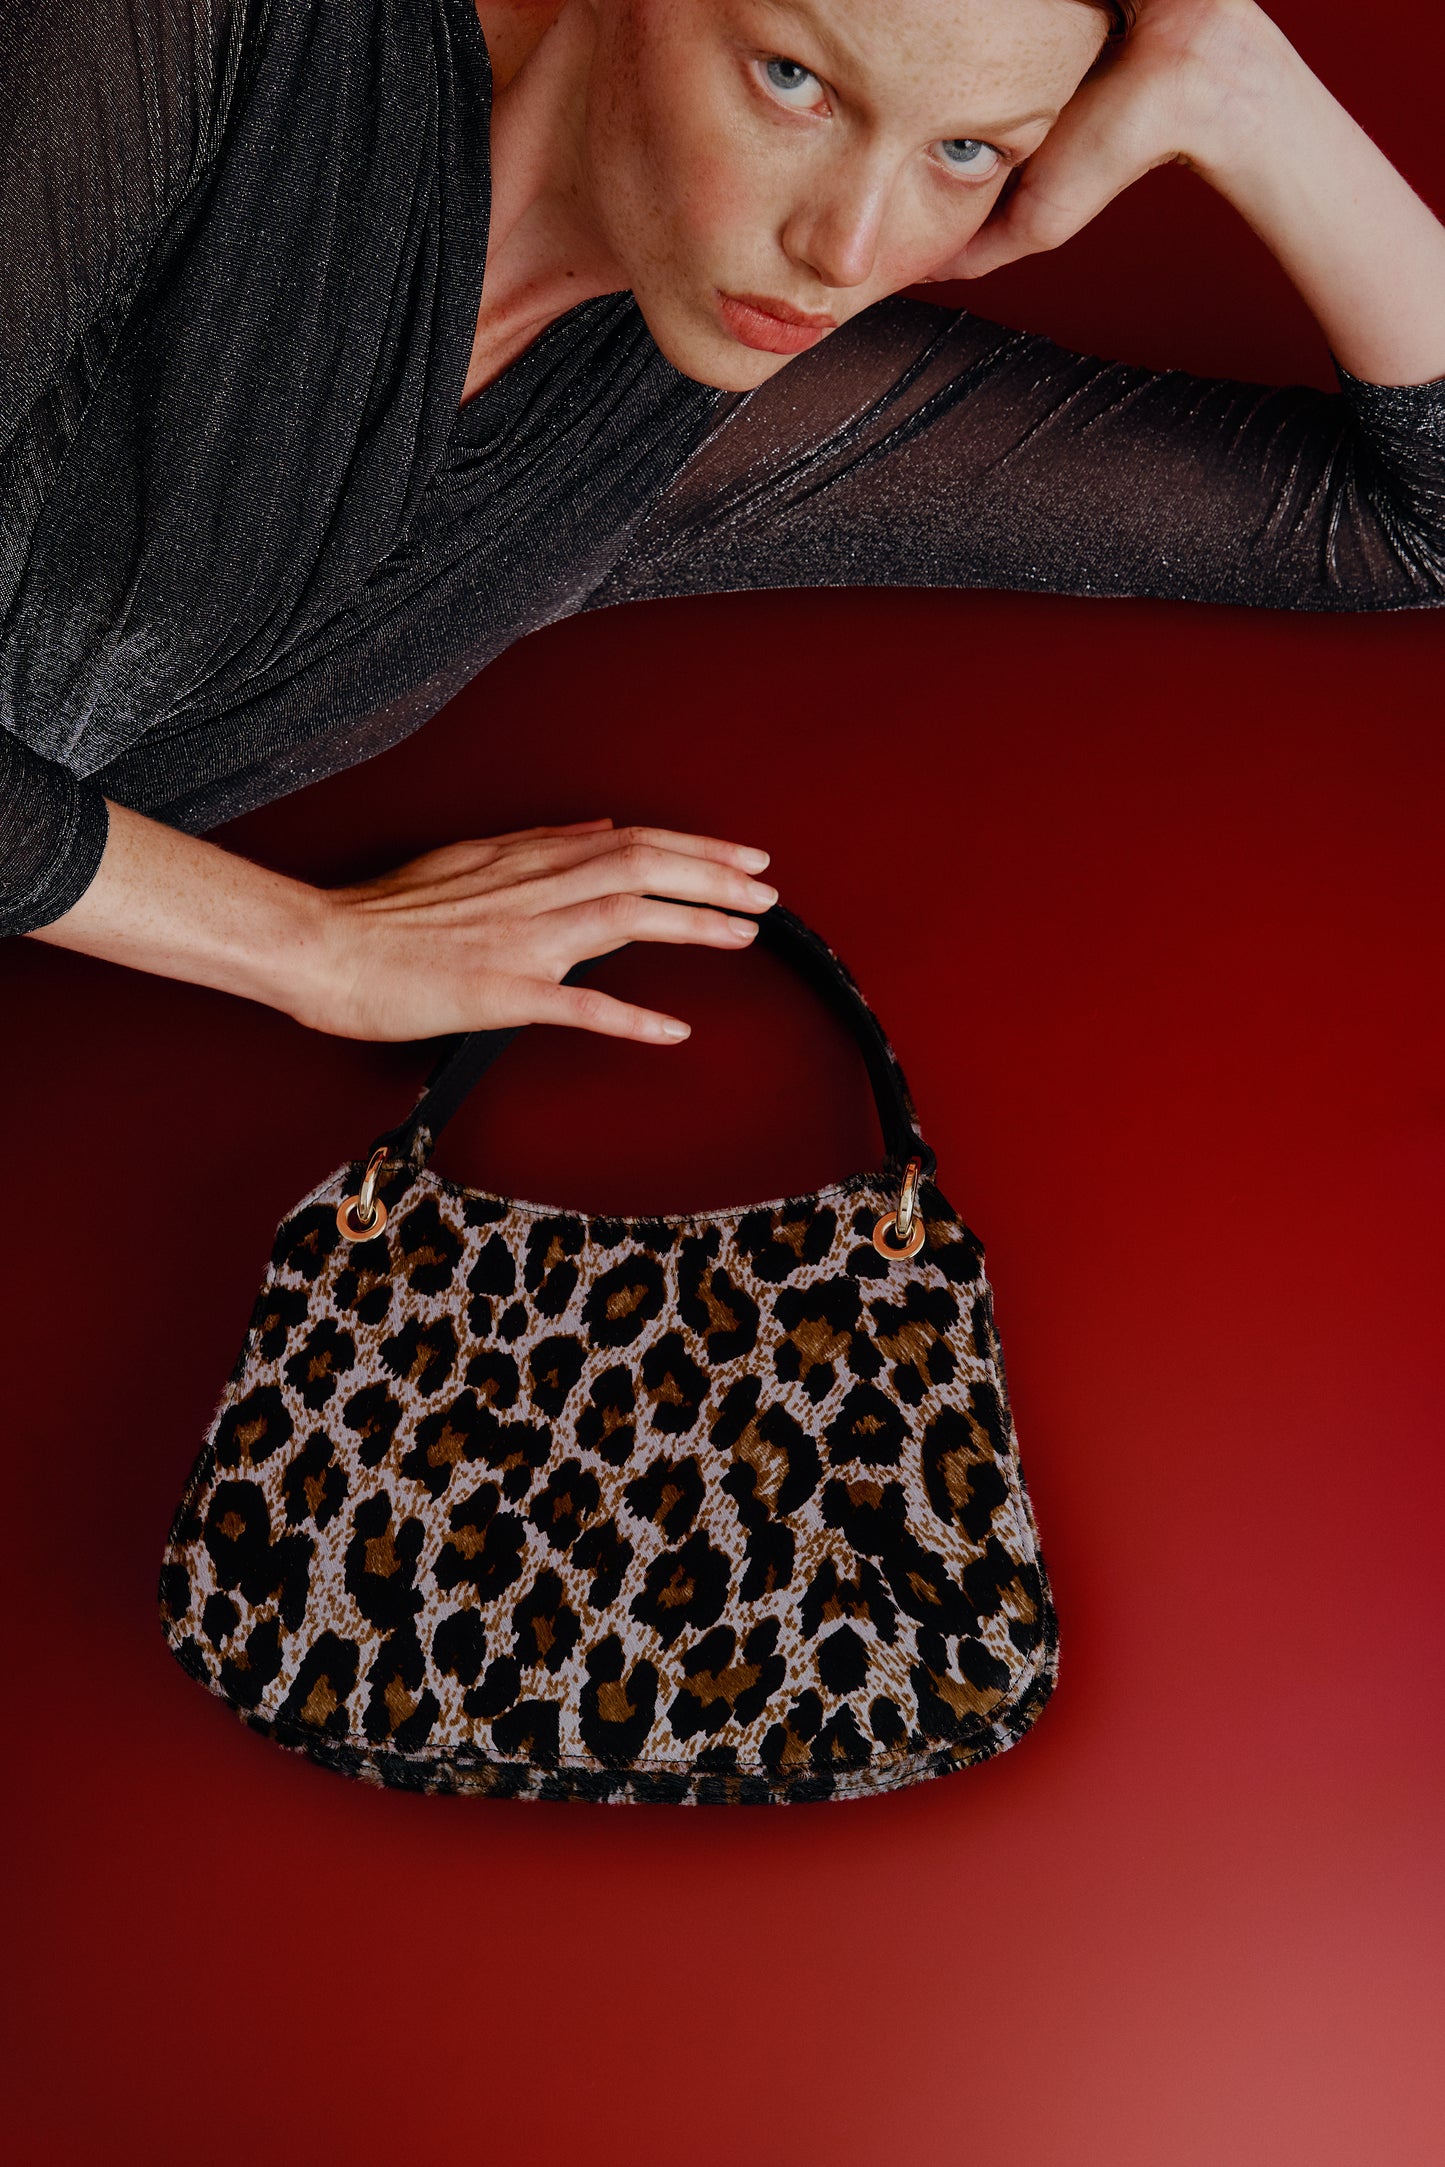 Mujer tumbada posando junto a un bolso de mano con estampado de leopardo gris